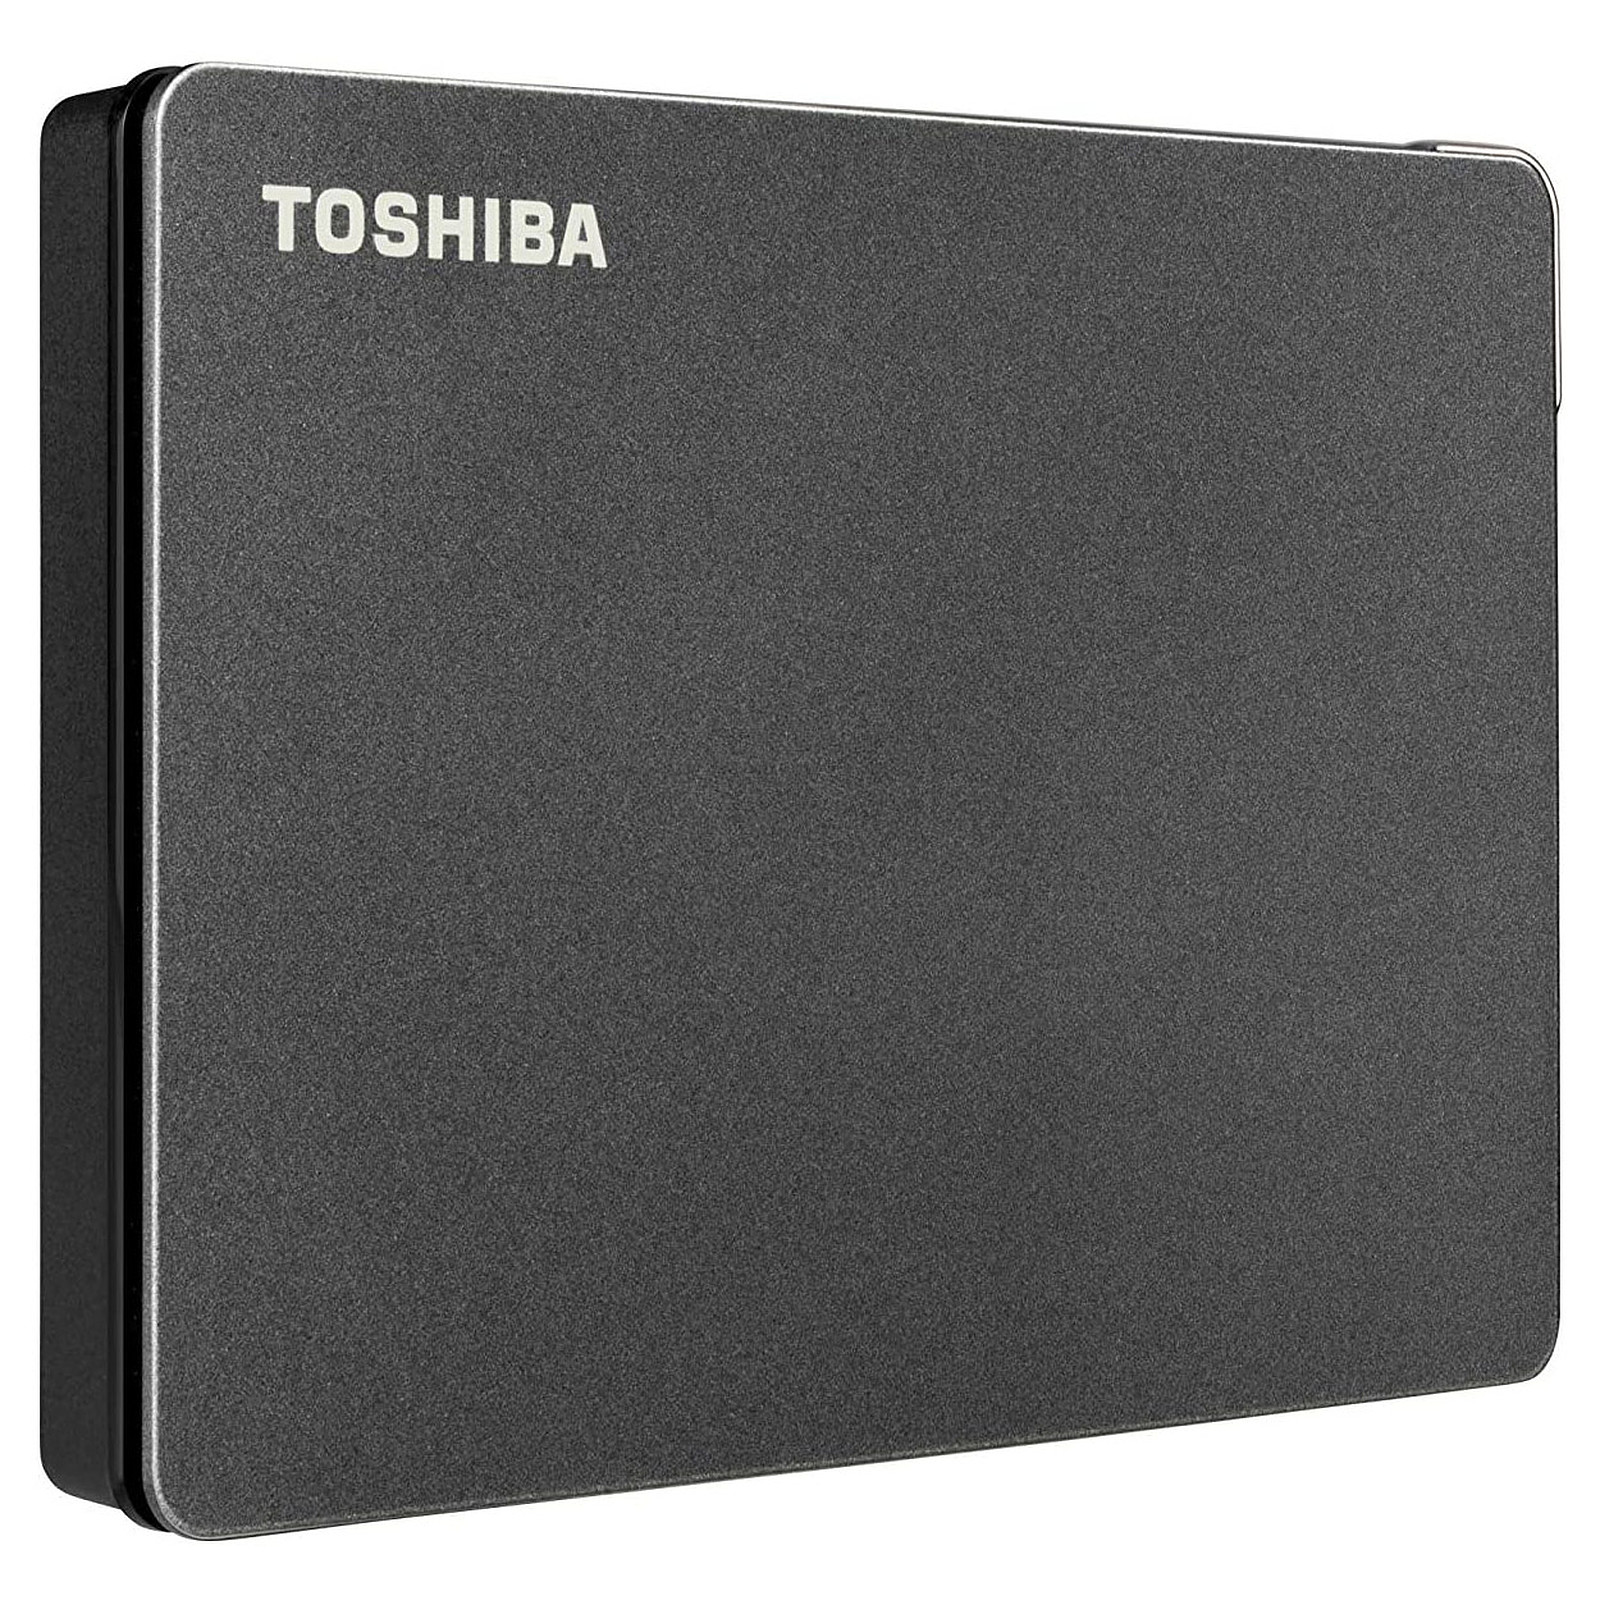 Toshiba Canvio Gaming 1 To Noir - Disque dur externe Toshiba